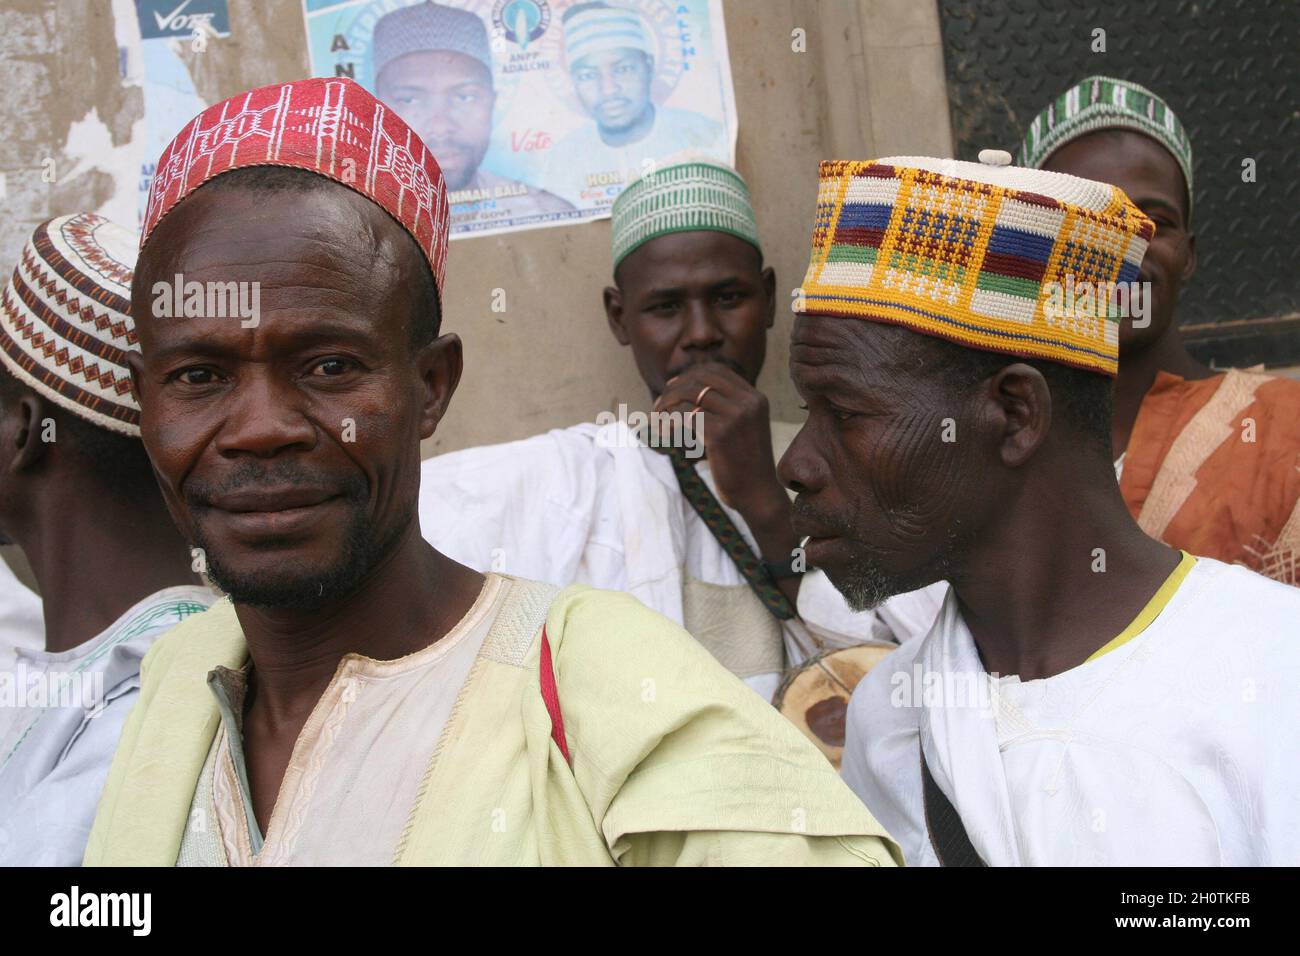 Uomini che vivono a Shinkafi, una città dello stato di Zamfara nel nord della Nigeria. La maggior parte delle persone che la vivono sono povere e vivono al di sotto di 1 dollaro al giorno. HAUSA è la prima lingua dello stato, che è anche il primo Stato ad aver introdotto la legge sulla sharia musulmana. "L'agricoltura è il nostro orgoglio” è lo slogan dello Stato, che è in gran parte agricolo. Shinkafi, Zamfara, Nigeria. Aprile 12, 2008. Foto Stock